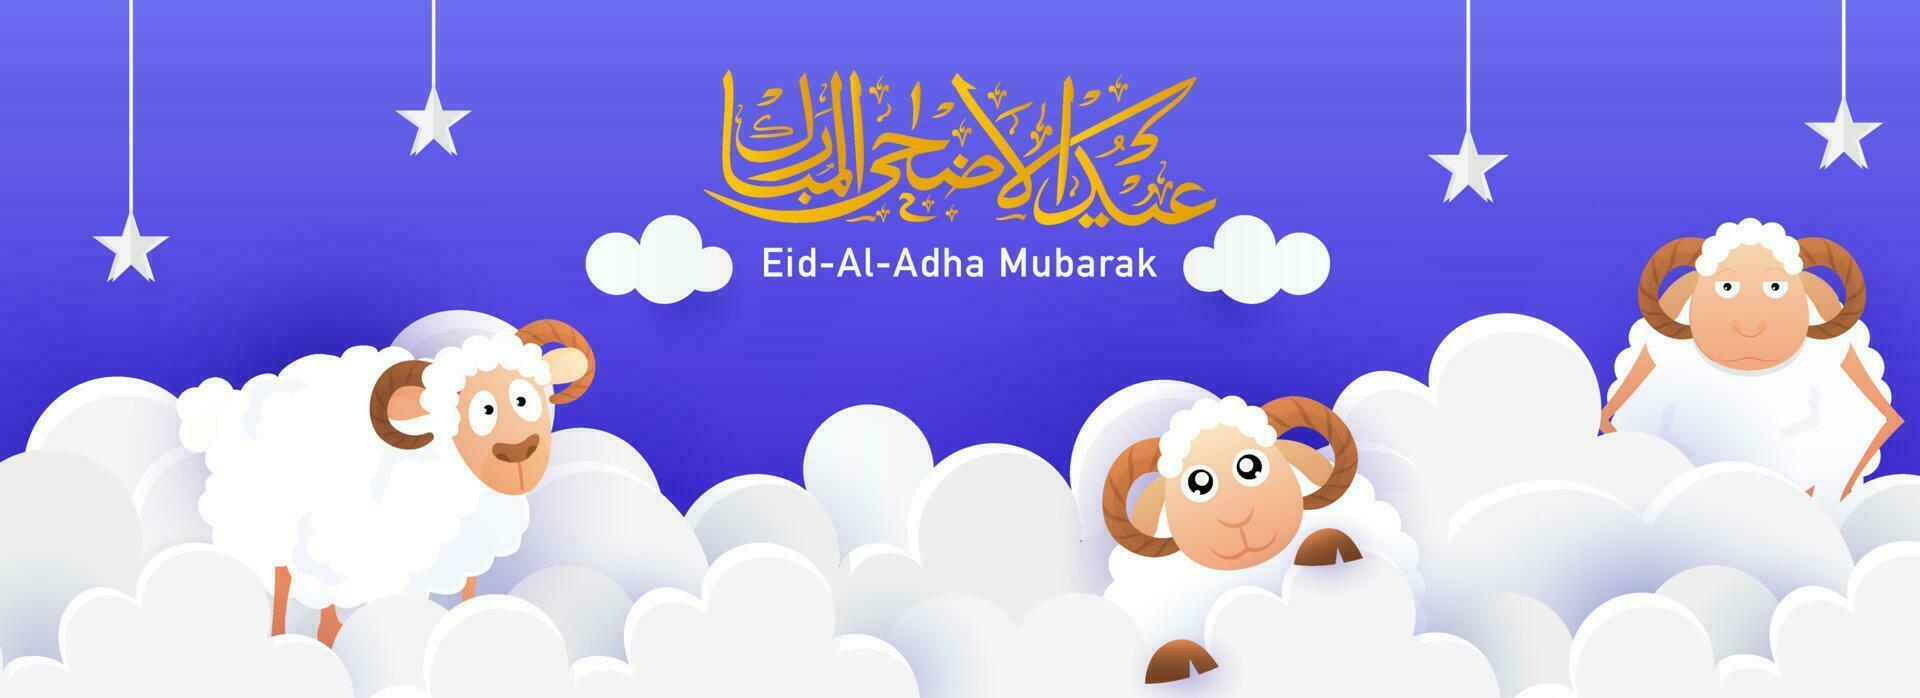 Arabisch schoonschrift van eid-al-adha mubarak tekst met drie tekenfilm schaap, hangende sterren en wit papier besnoeiing wolken Aan blauw achtergrond. vector